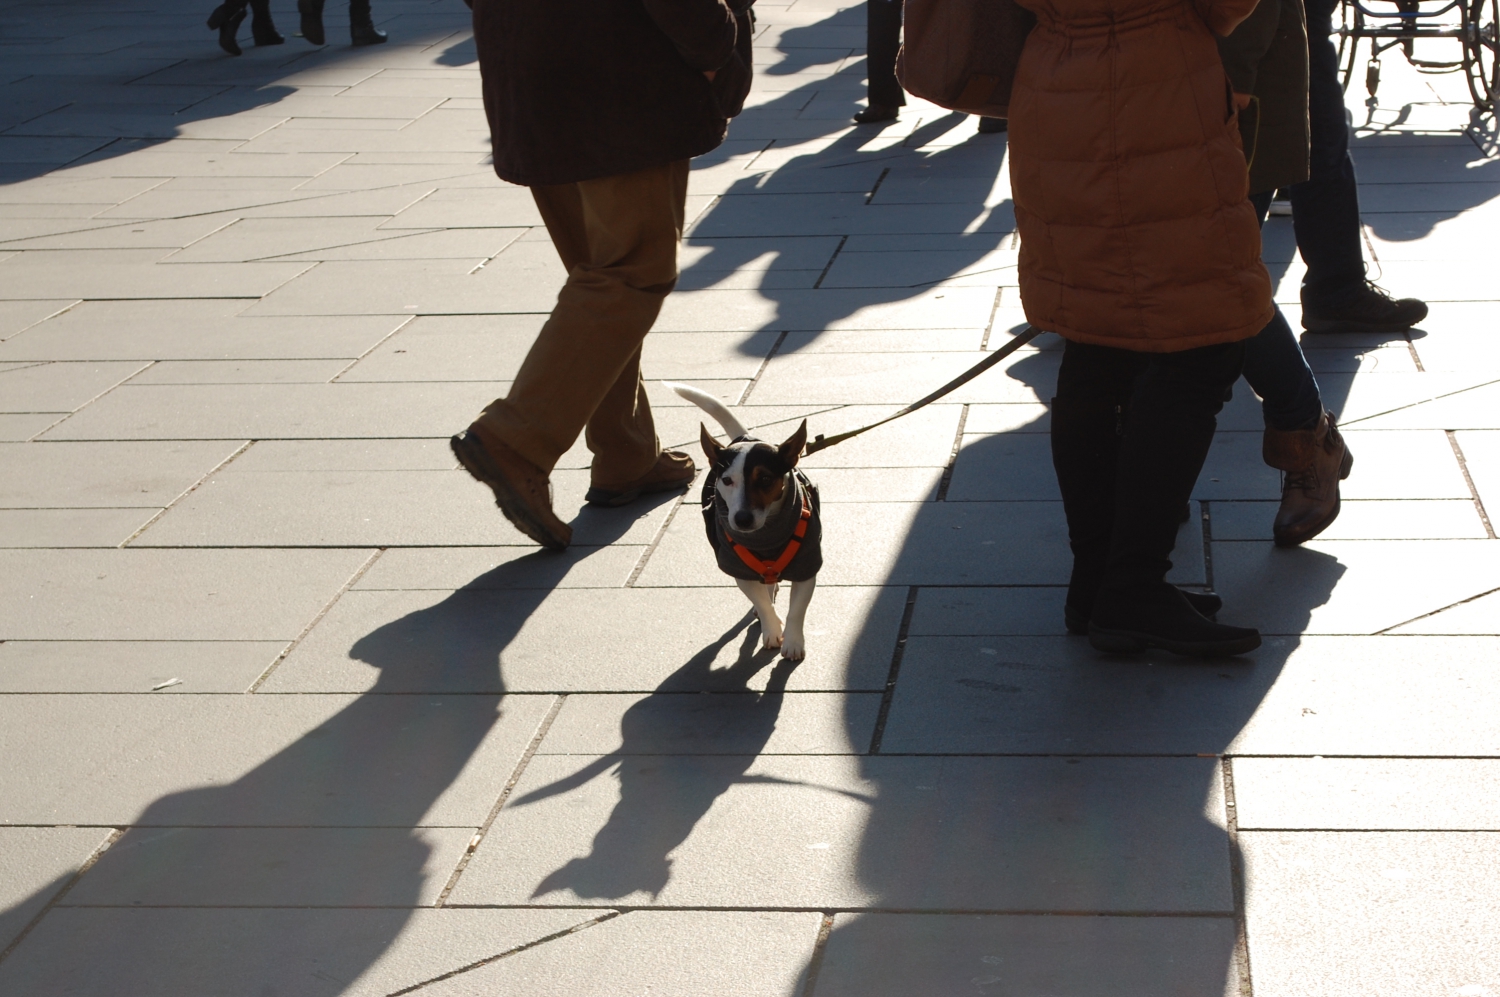 Fiatalok – kutya – Az osztrákok nagy kutyabarátok; annak ellenére, hogy elég drága szórakozás itt háziállatot tartani. És a kutyák lépten-nyomon ott vannak a gazdik mellett: elkísérik őket nemcsak sétálni, hanem az üzletekbe, sőt egyes éttermekbe, kávézókba is, ez itt mindennapos és megszokott látvány. (sétálóutca, Bécs) - (Fotó: Laslavic Tímea)